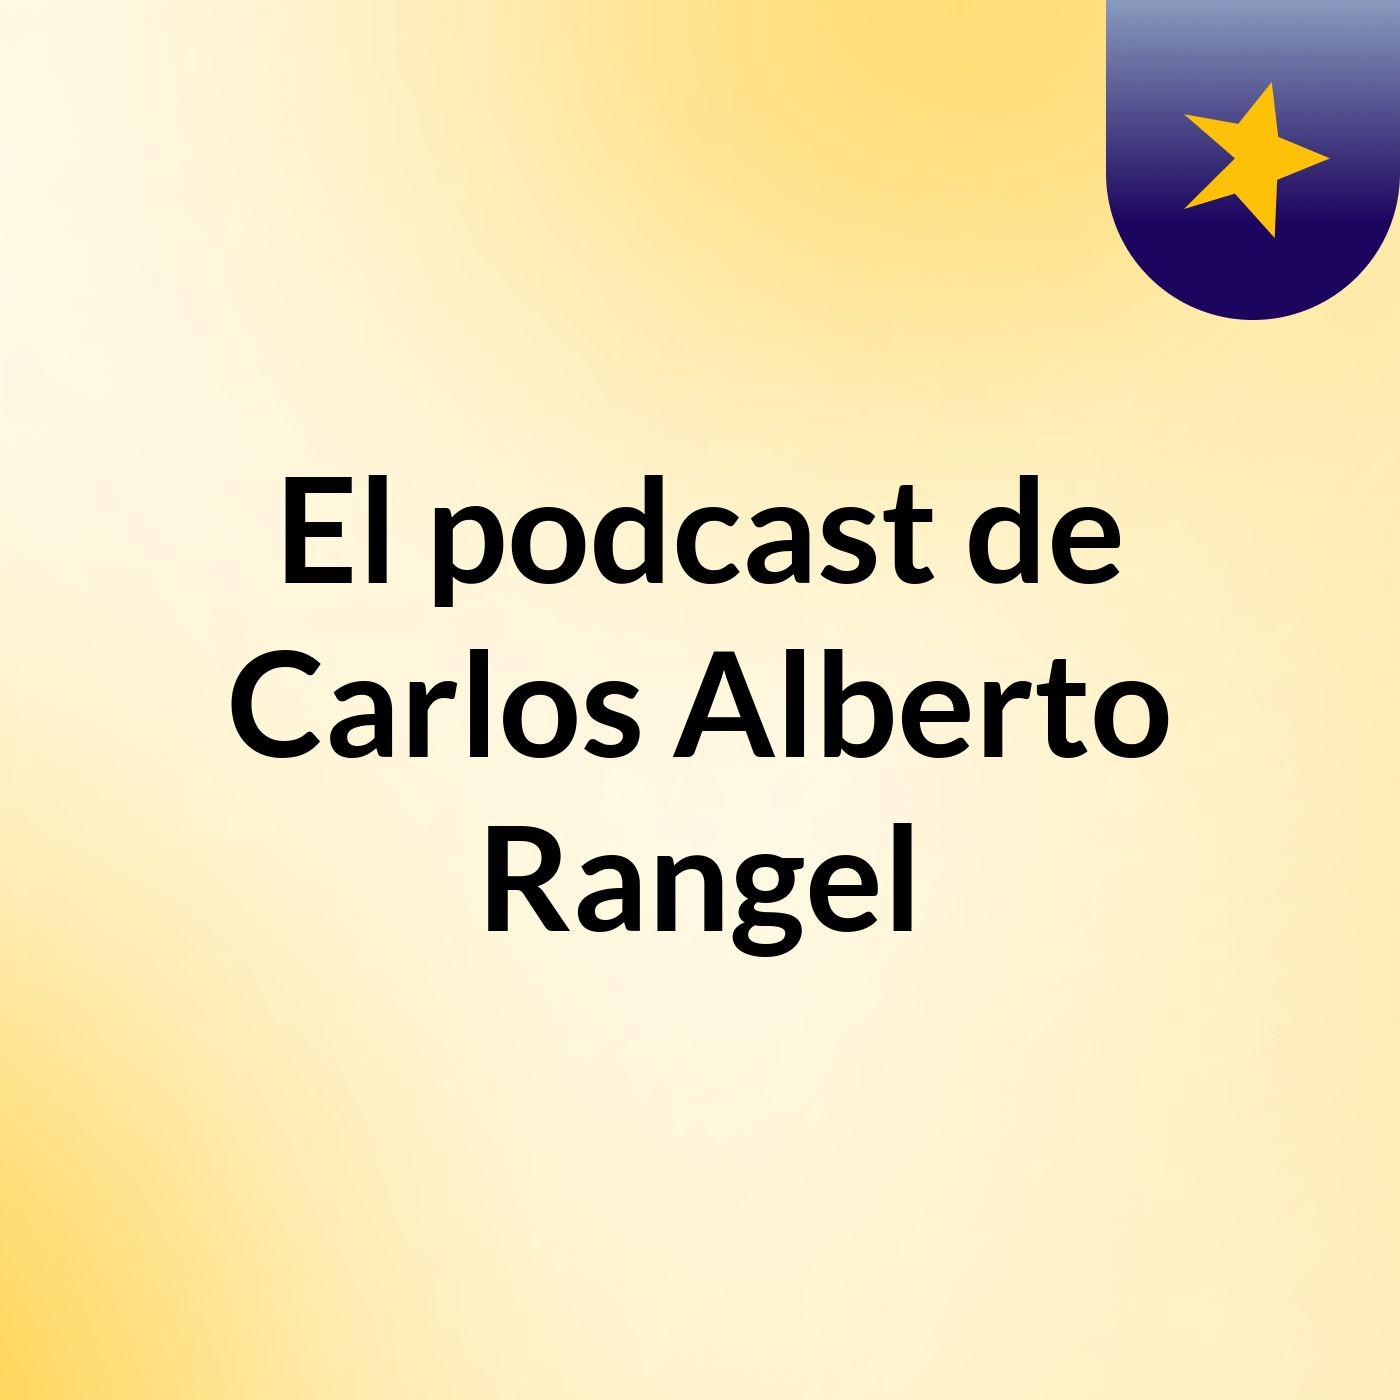 Episodio 5 - El podcast de Carlos Alberto Rangel